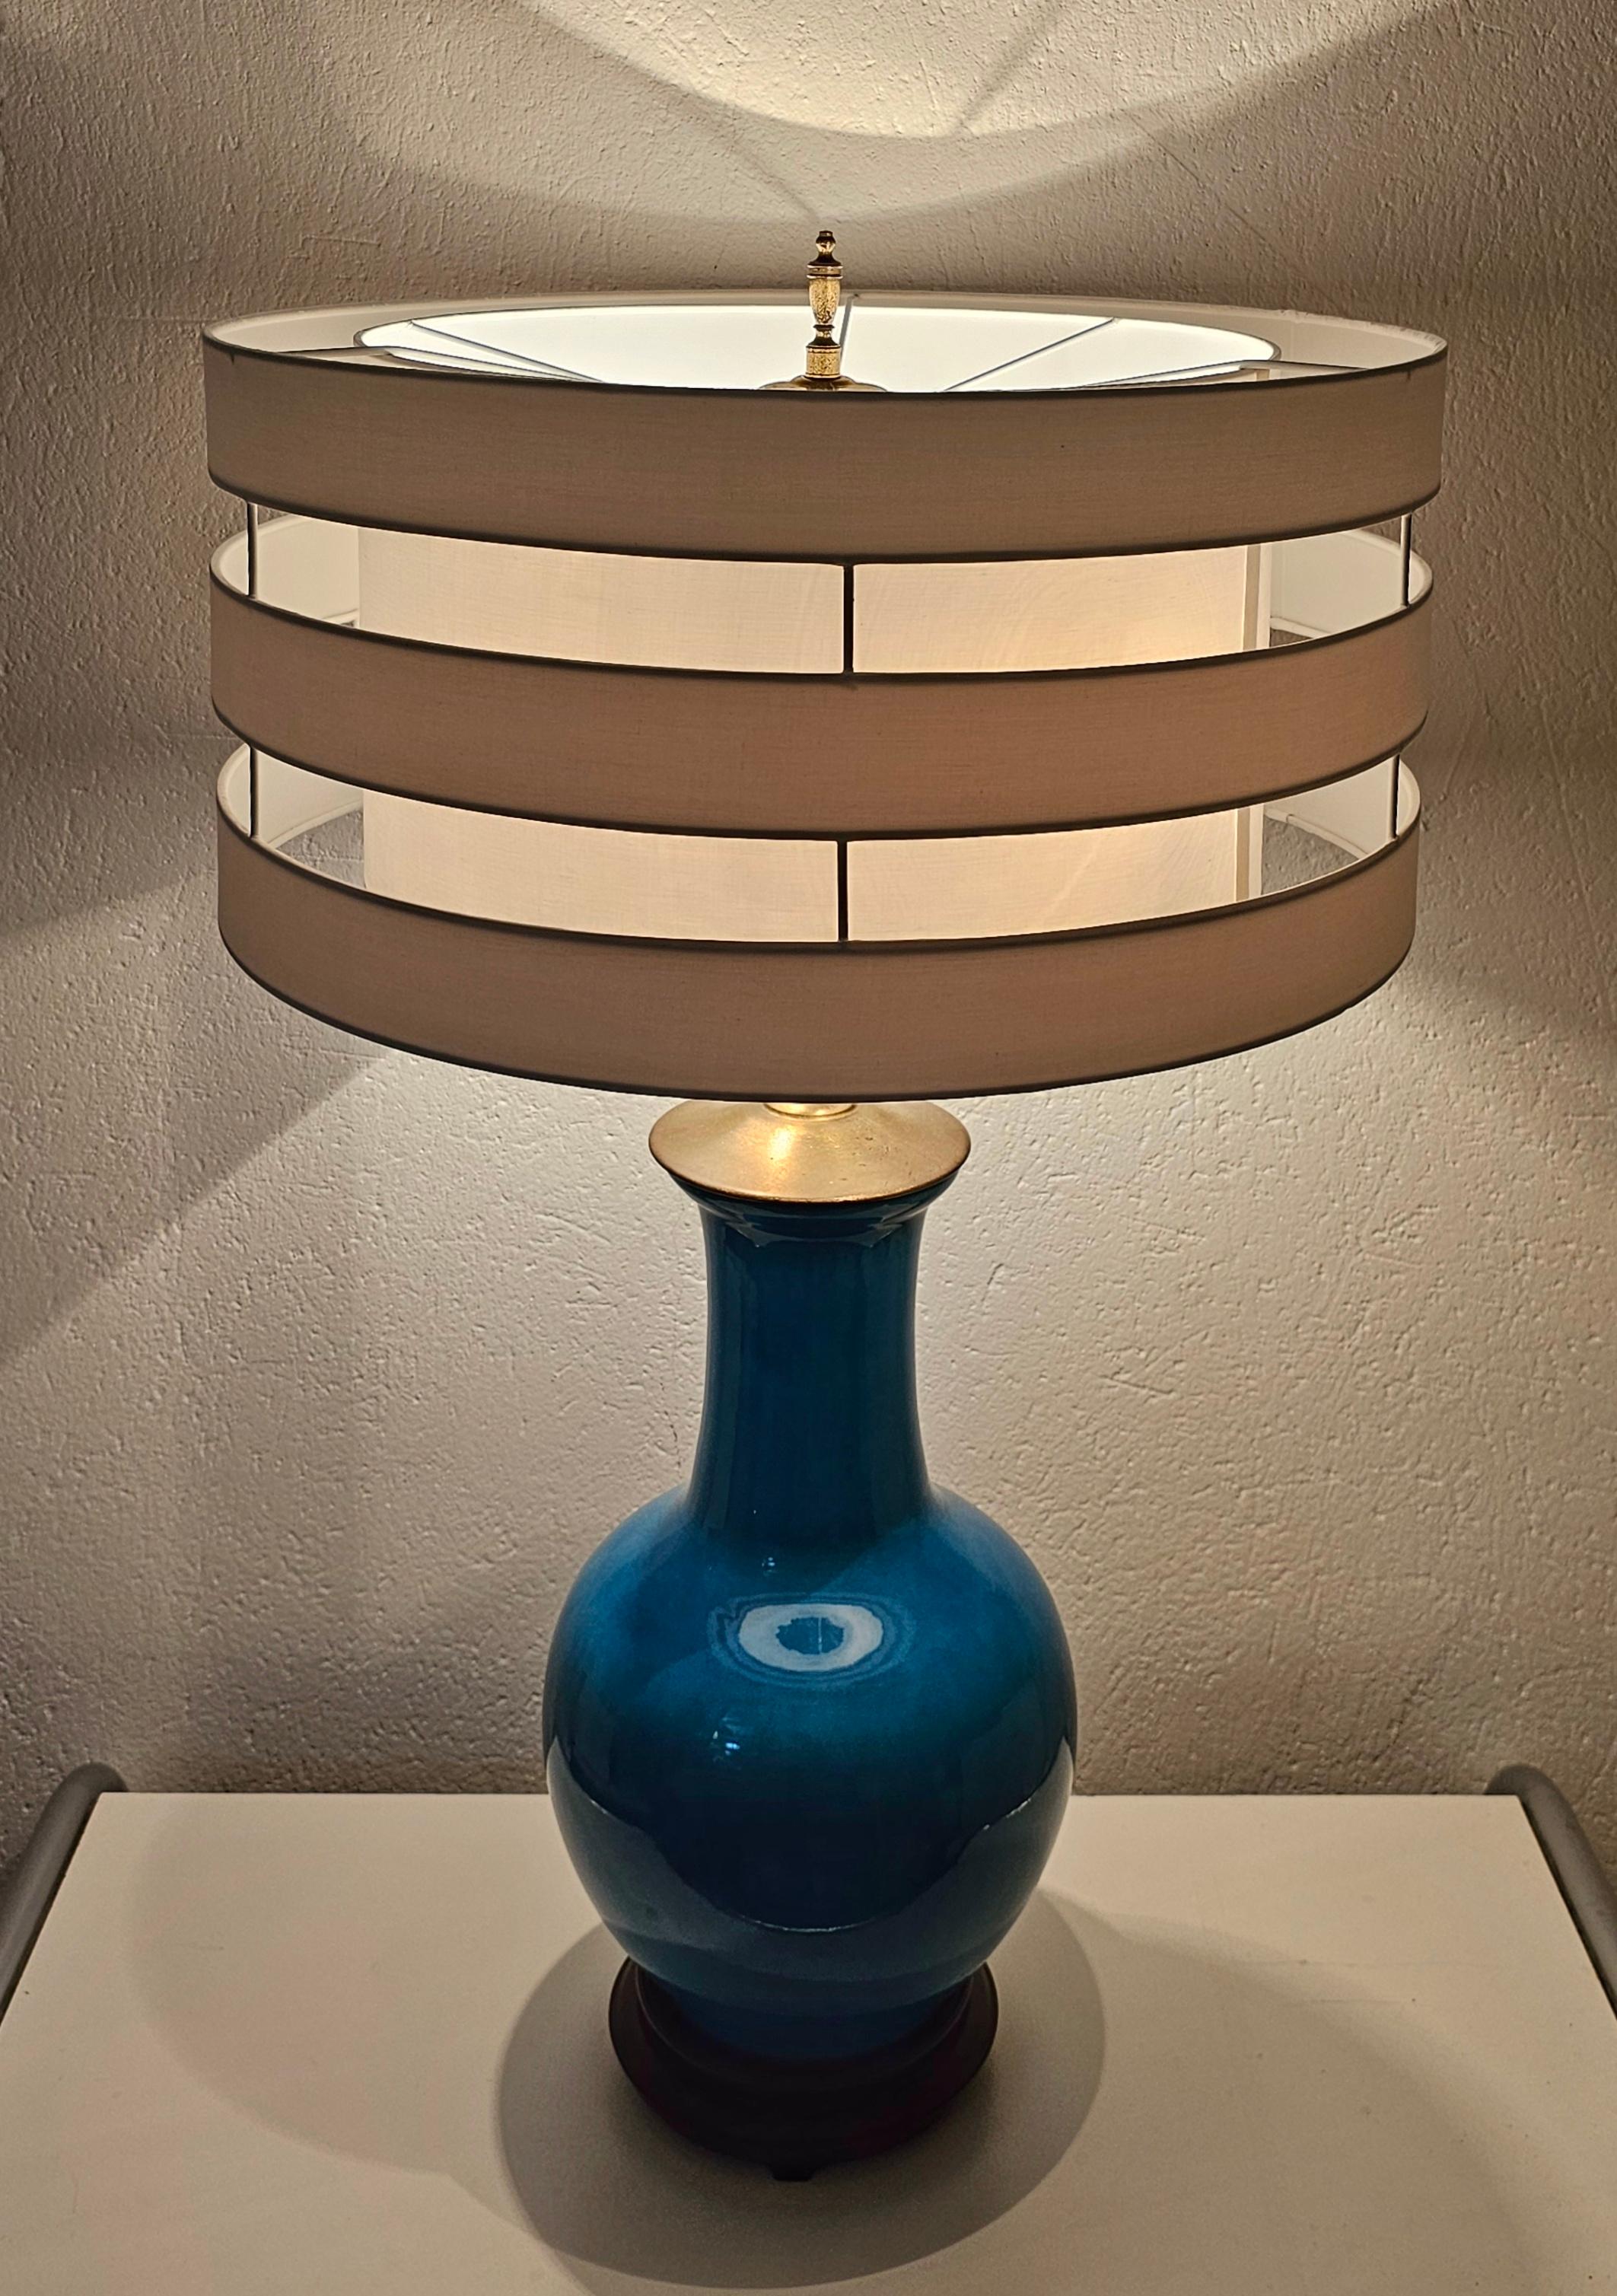 Vous trouverez dans cette annonce une rare et grande lampe de table Mid Century Modern de Warren Kessler New York. La lampe est fabriquée en céramique bleue, avec une base en acajou. Elle est dotée de 2 ampoules et d'un grand abat-jour blanc, qui